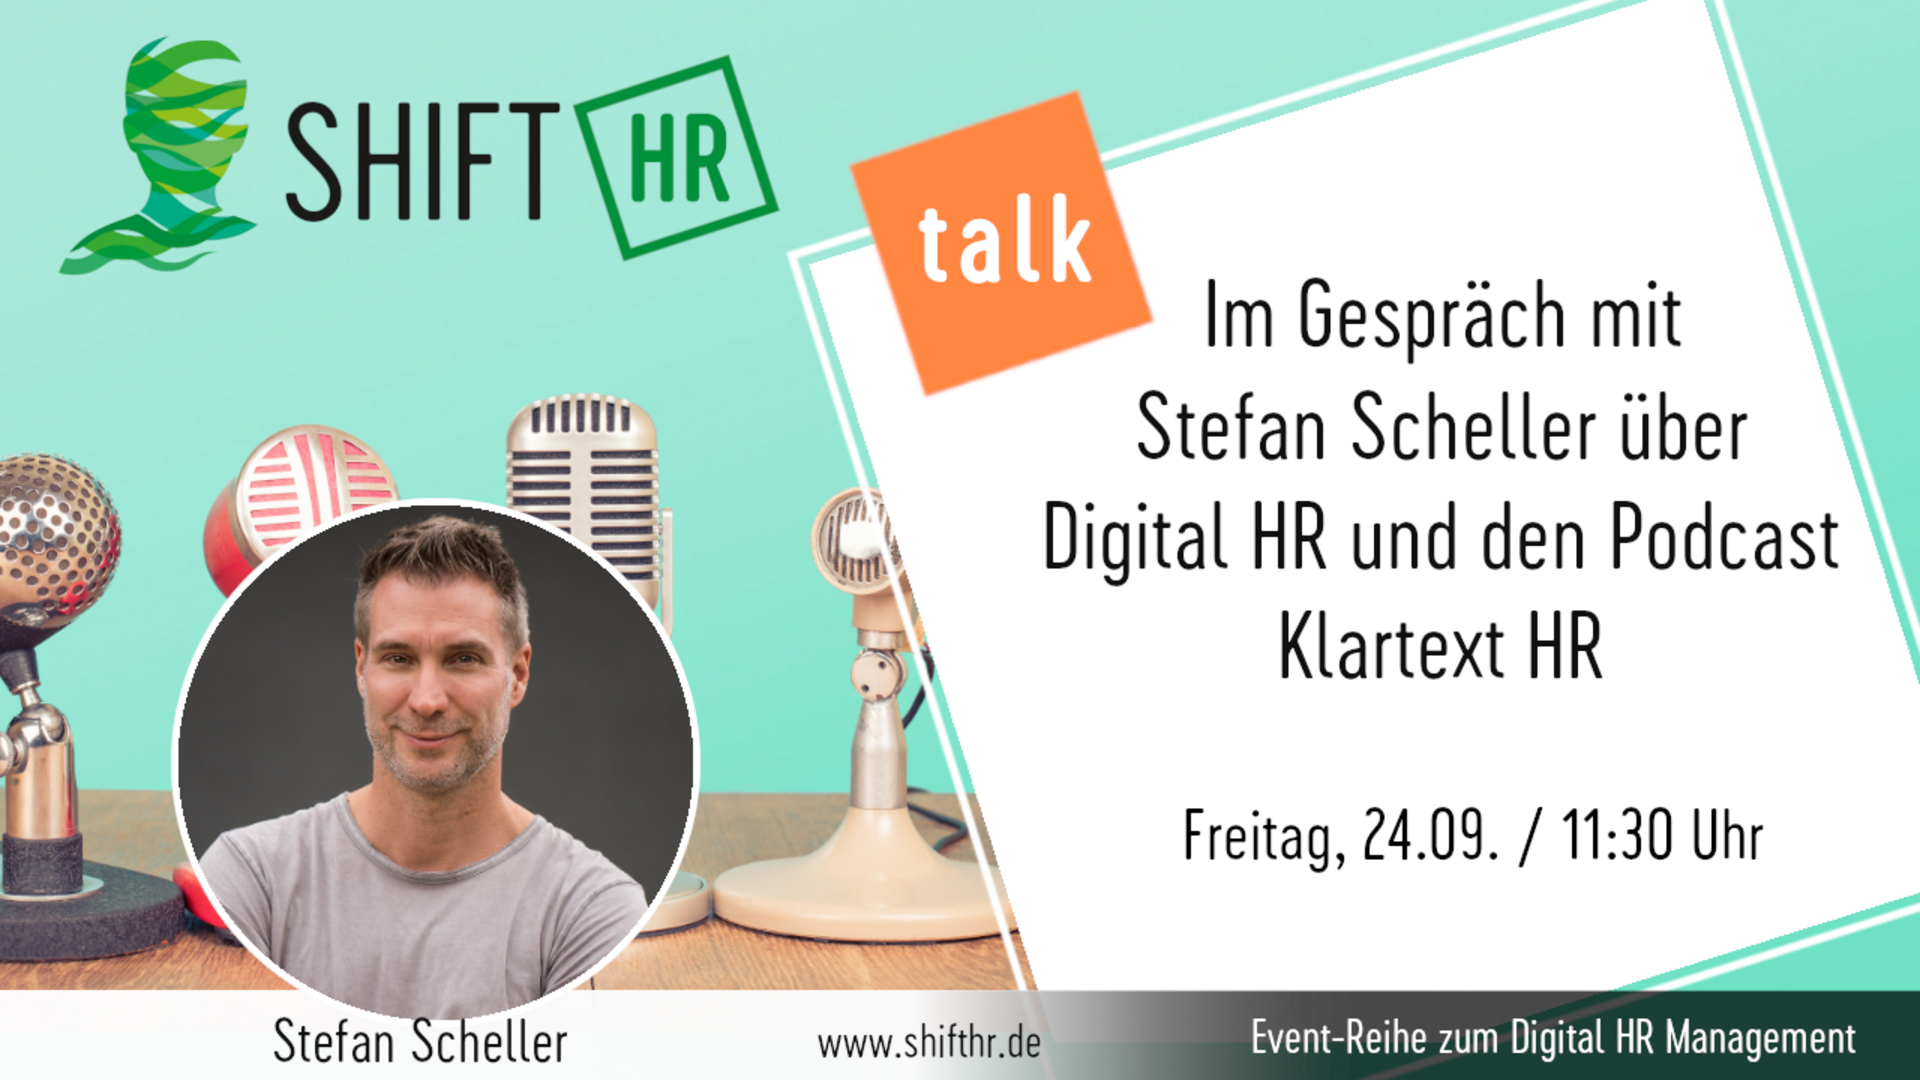 Im Gespräch mit Stefan Scheller über Digital HR und seinen Podcast Klartext HR